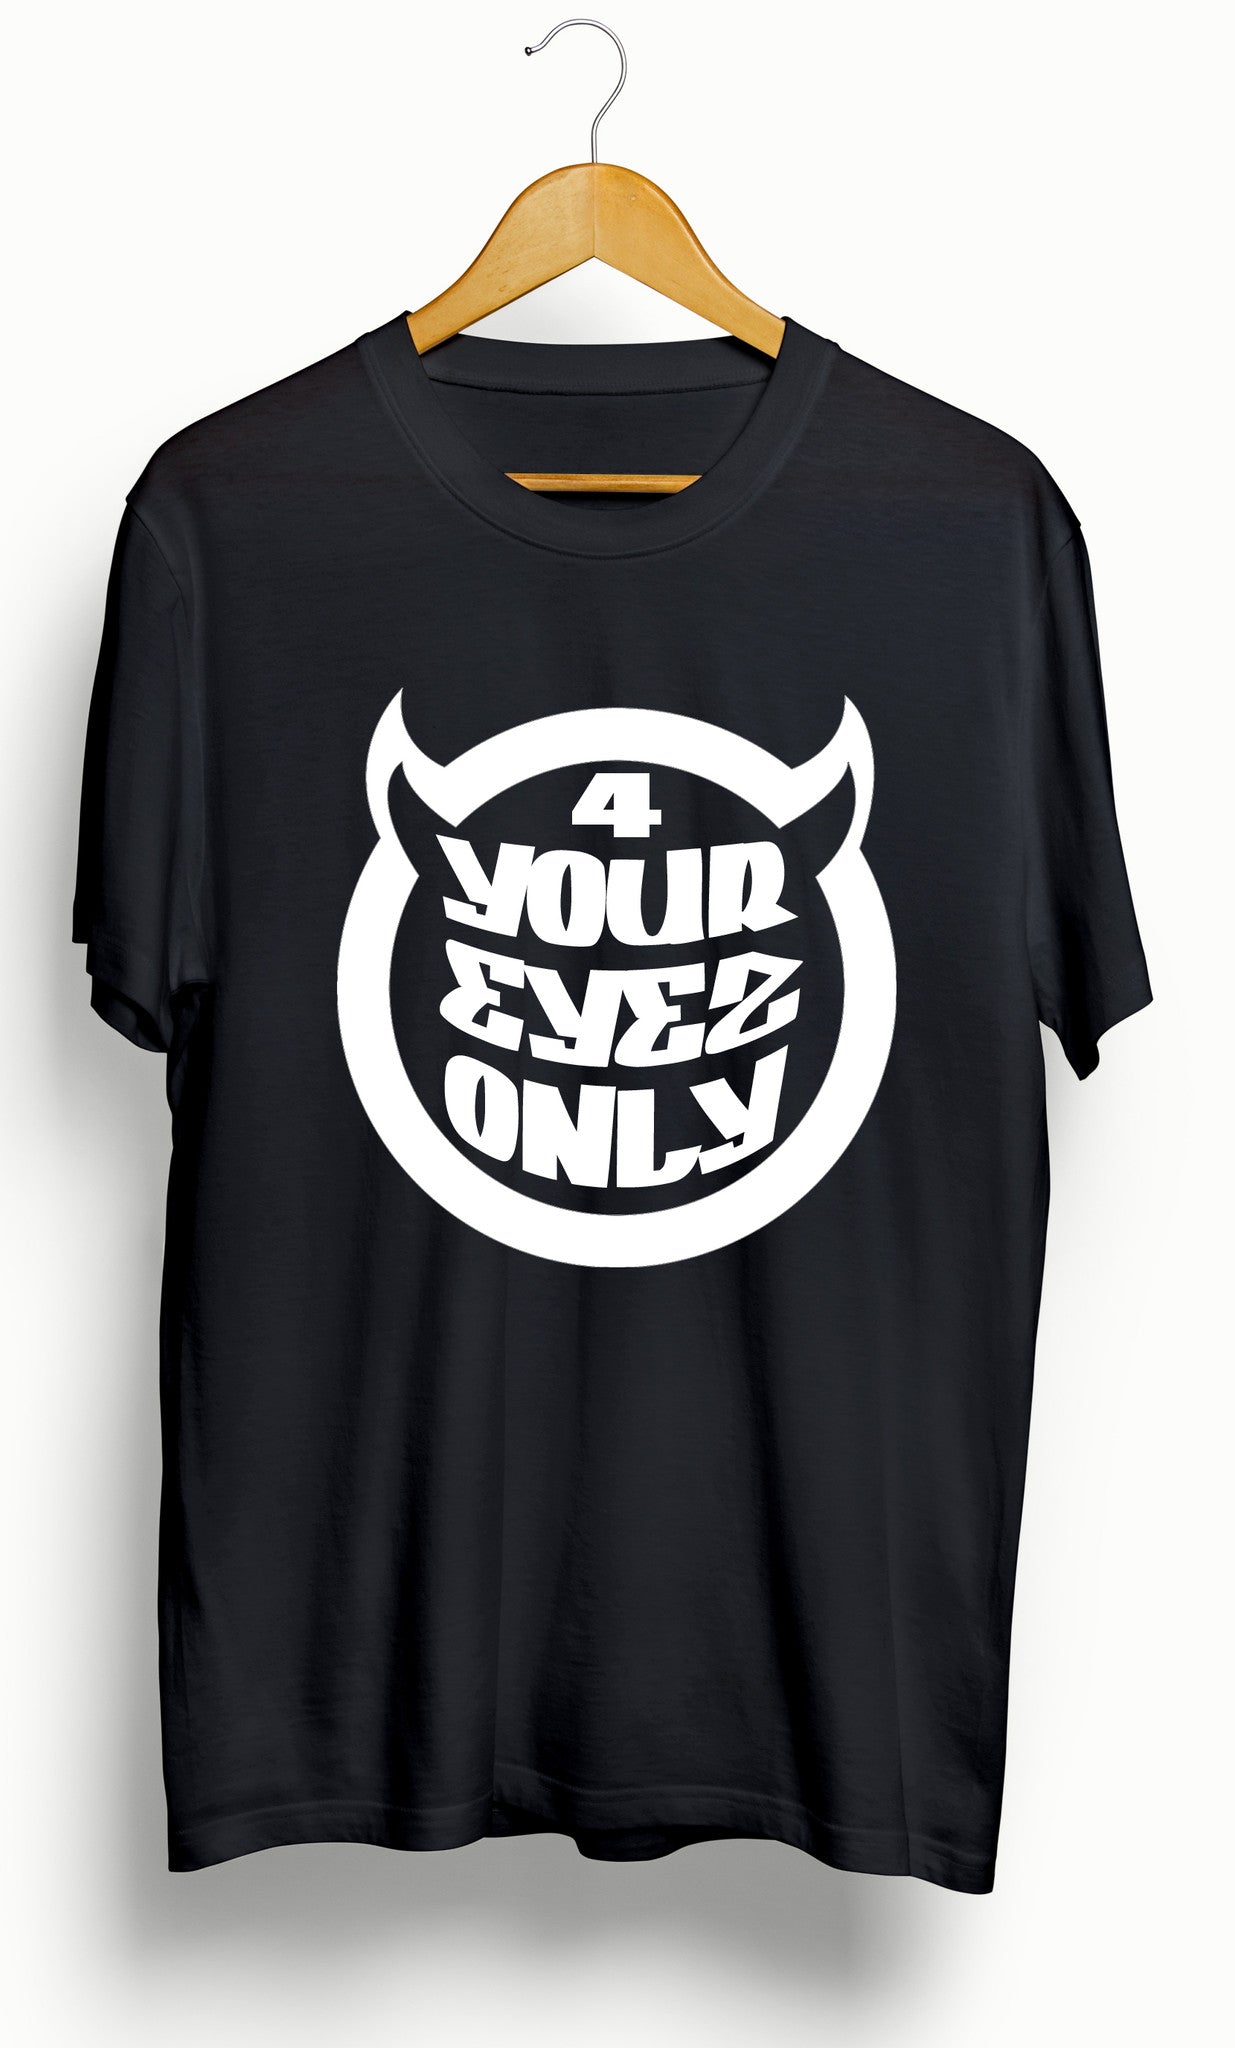 J Cole &quot;4 Your Eyez Only&quot; Album T-Shirt - Ourt